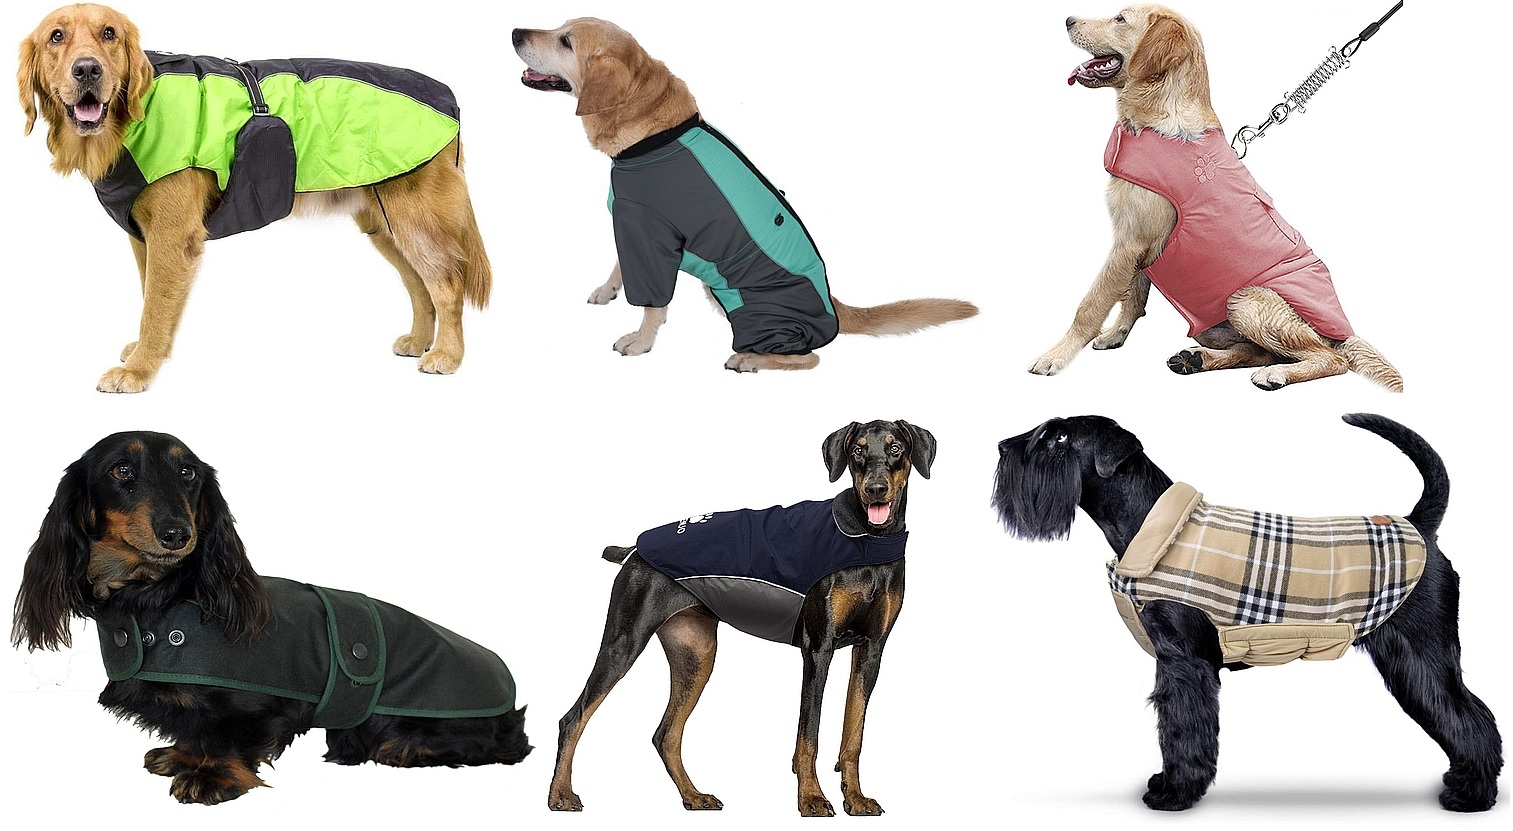 kutyaruha, kutyapulcsi, divat, háziállat, öltözködés, fashion, dog fashion